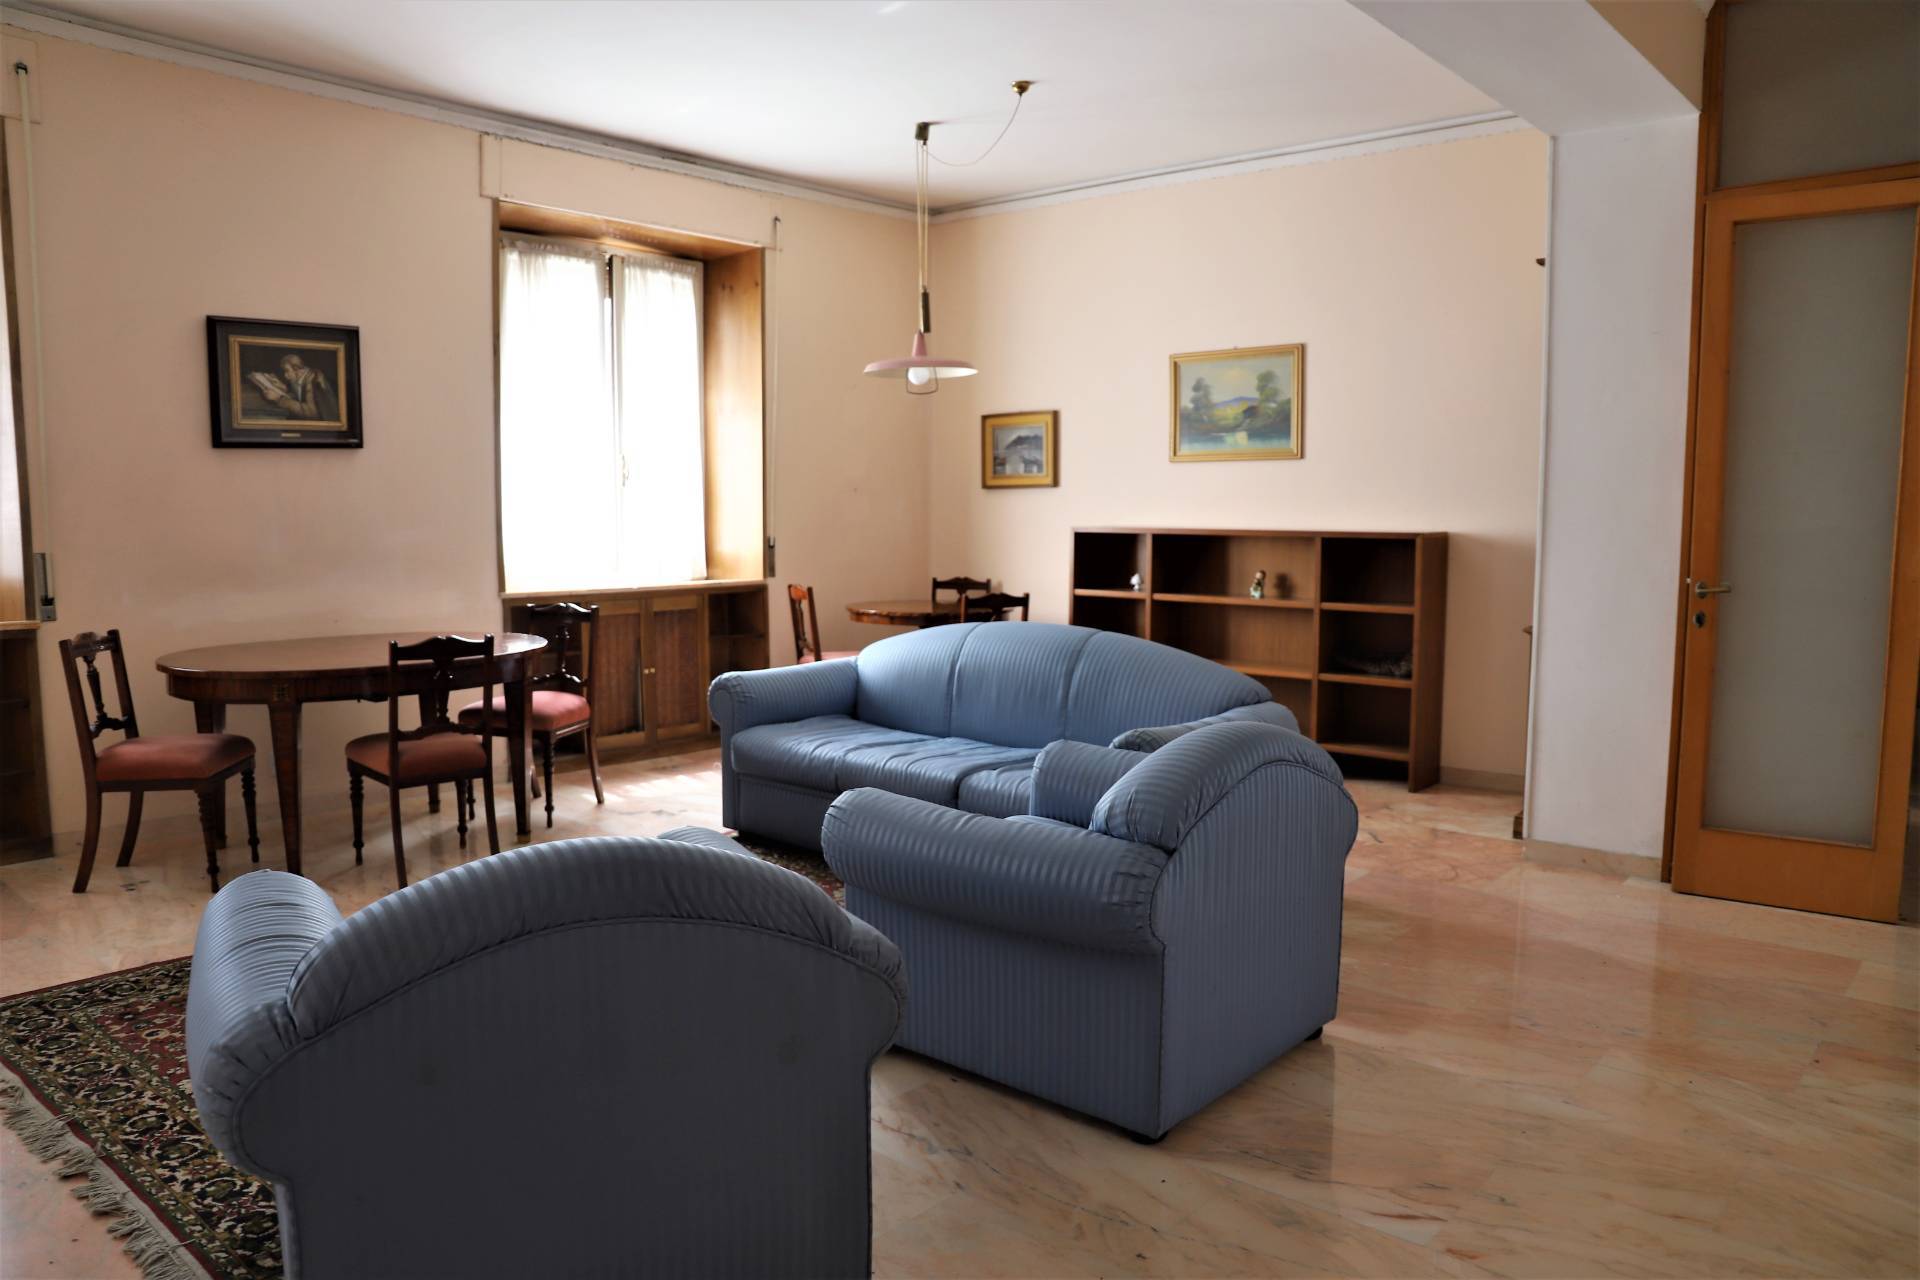 Appartamento in vendita a Fermo, 6 locali, prezzo € 110.000 | PortaleAgenzieImmobiliari.it